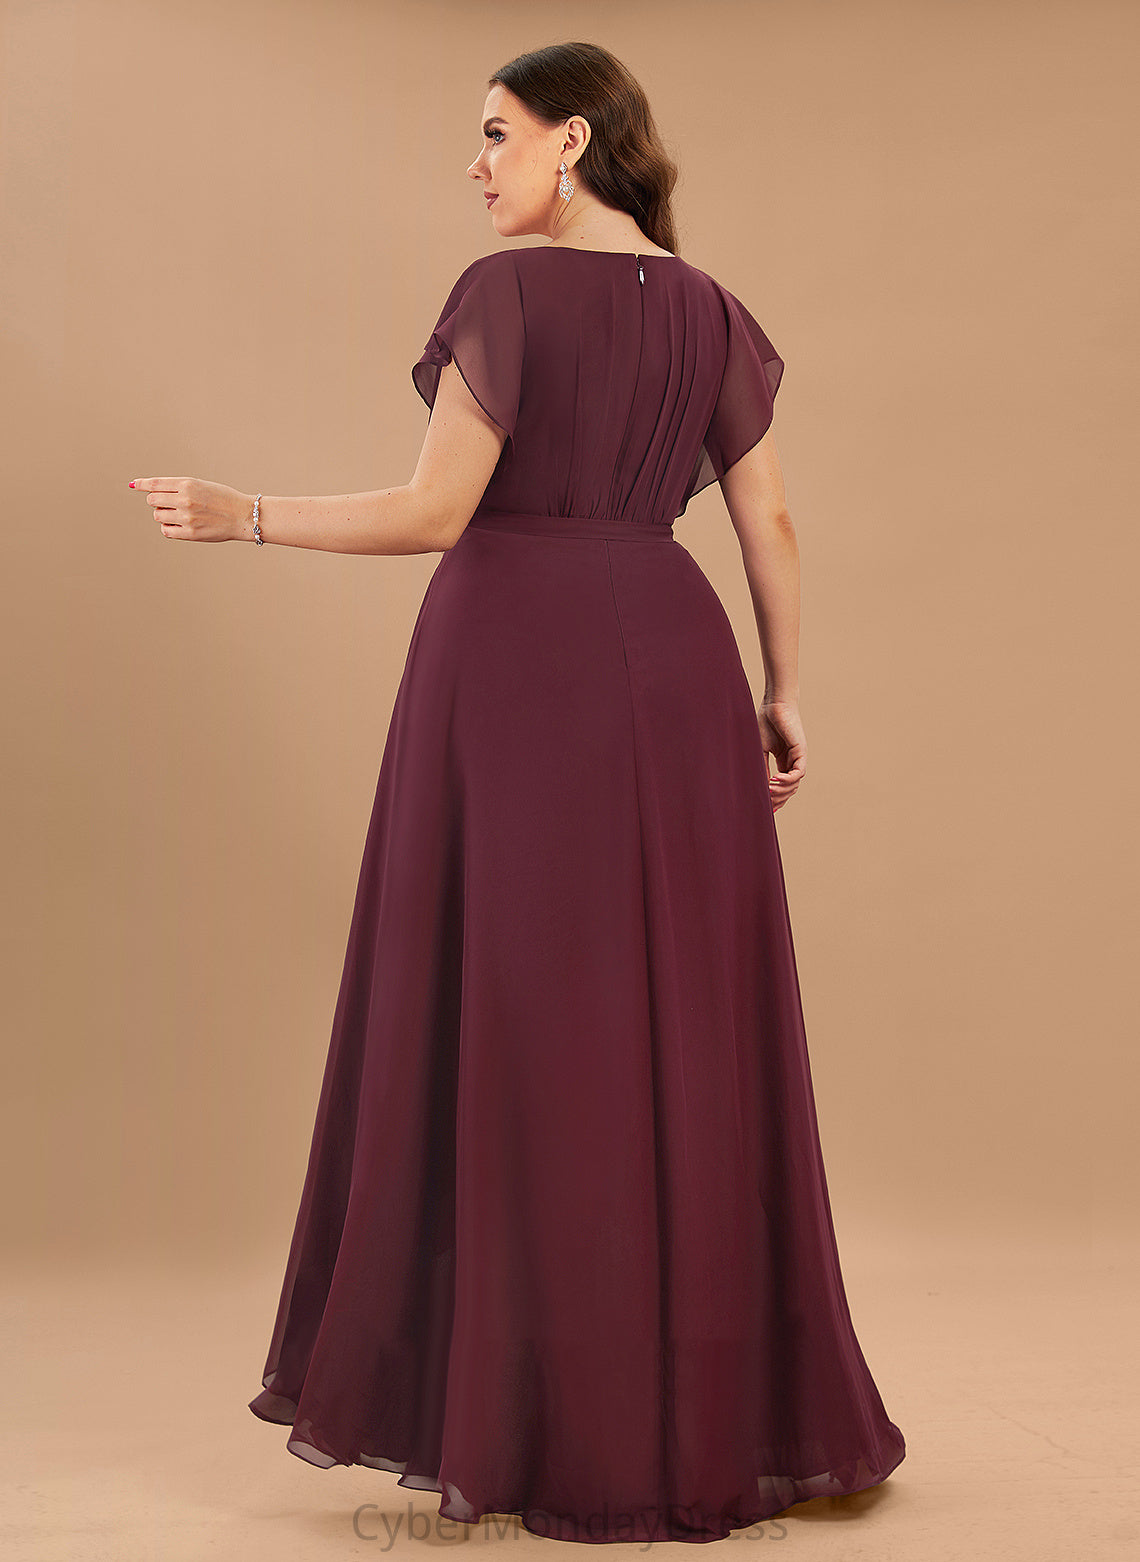 Fabric Neckline Silhouette Ruffle Length Asymmetrical ScoopNeck A-Line Embellishment Mara Sleeveless A-Line/Princess Bridesmaid Dresses